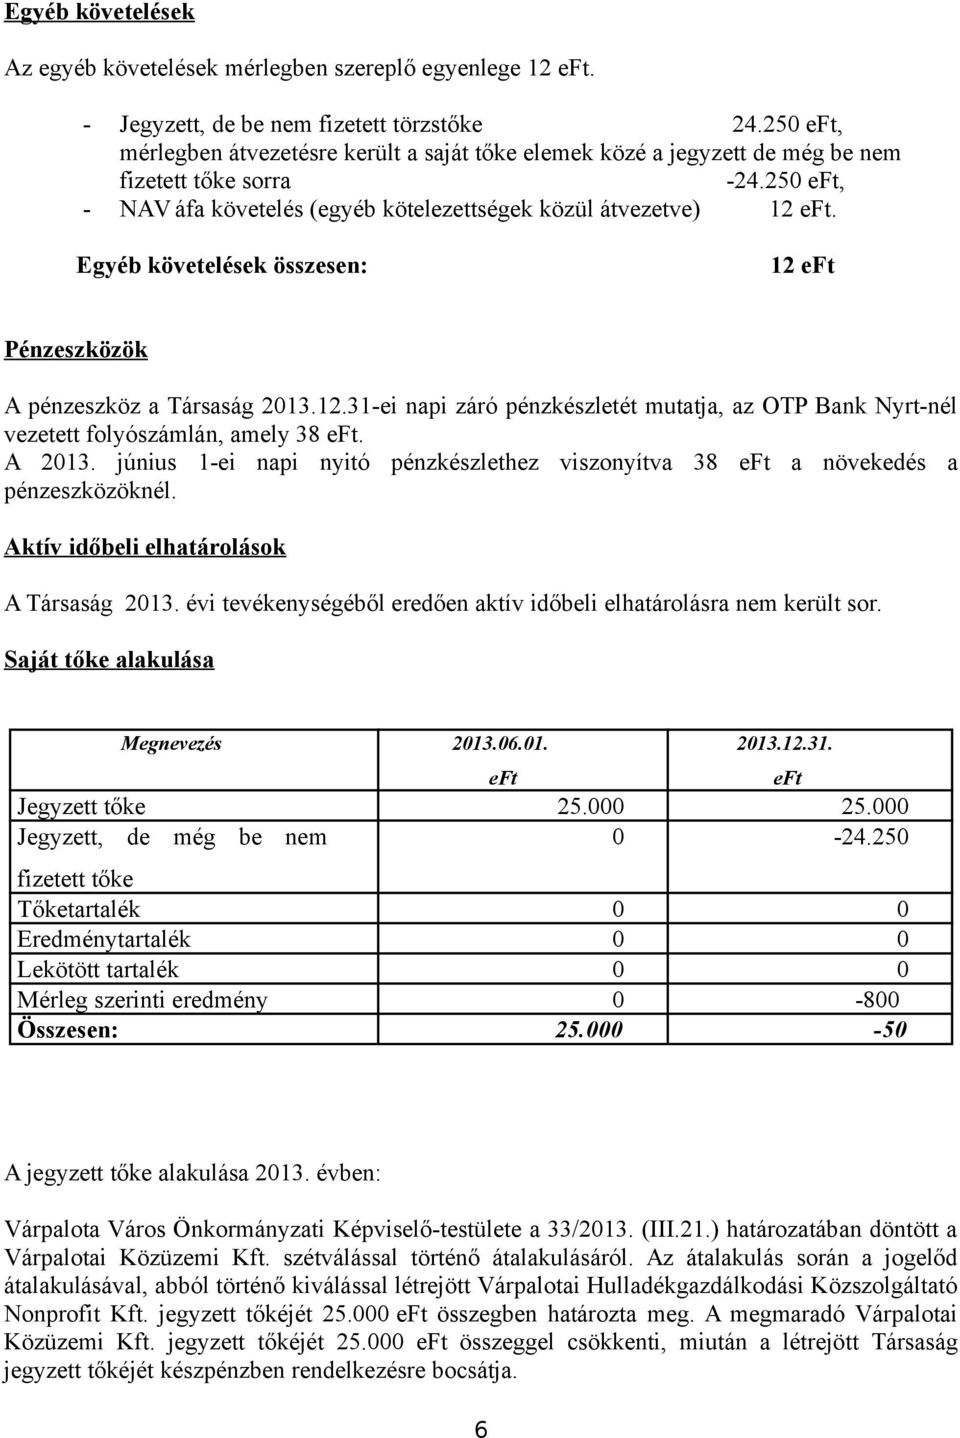 Egyéb követelések összesen: 12 eft Pénzeszközök A pénzeszköz a Társaság 2013.12.31-ei napi záró pénzkészletét mutatja, az OTP Bank Nyrt-nél vezetett folyószámlán, amely 38 eft. A 2013.